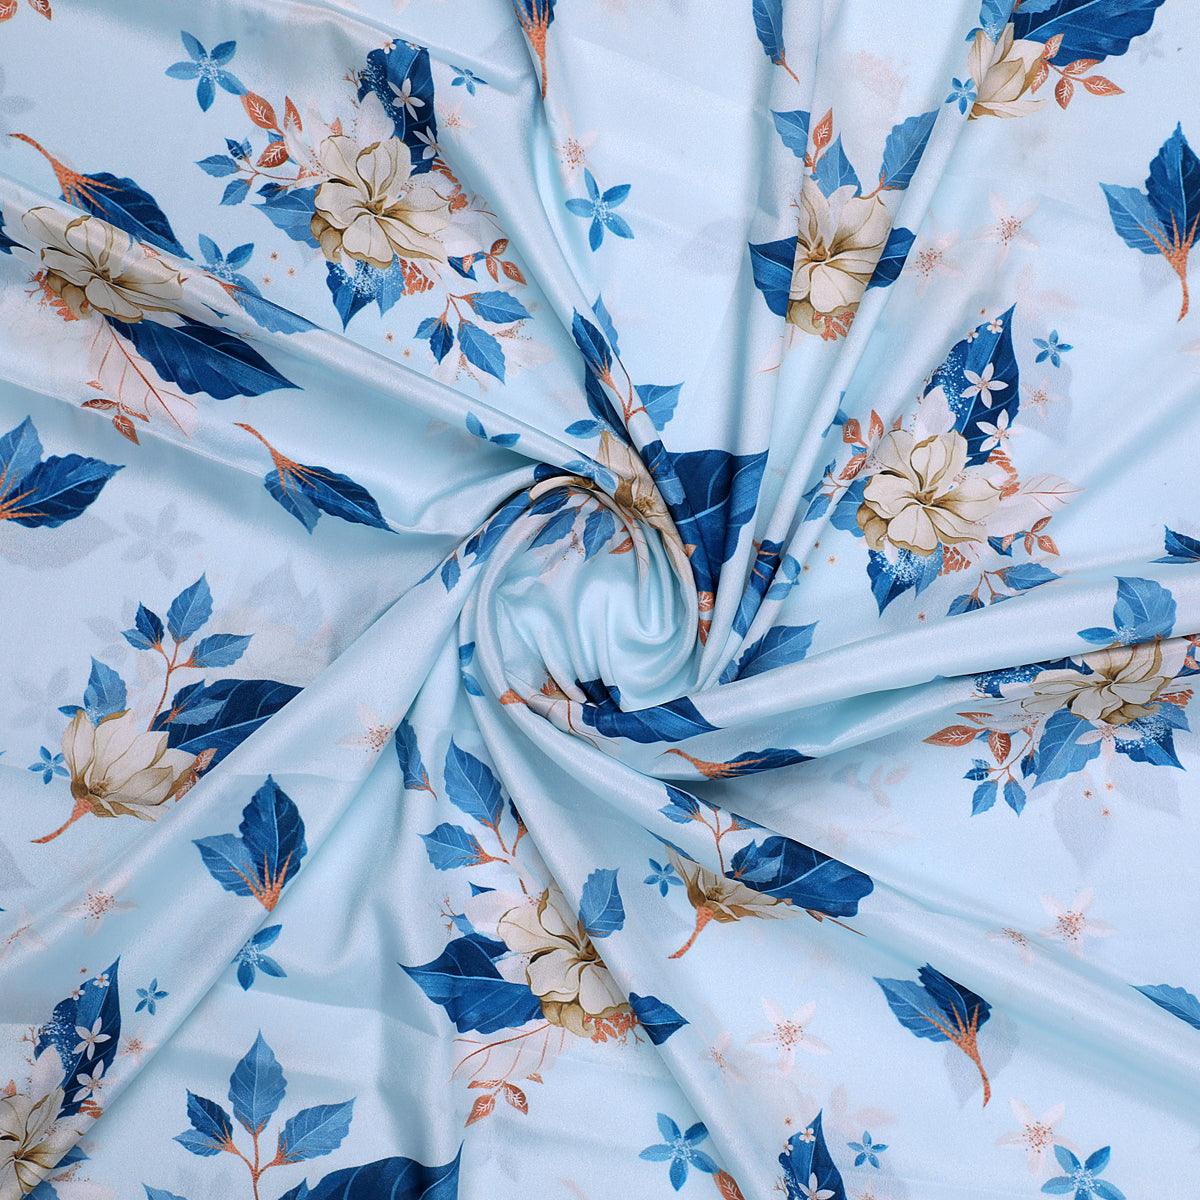 Flower On Ocean Blue Digital Printed Fabric - Crepe - FAB VOGUE Studio®